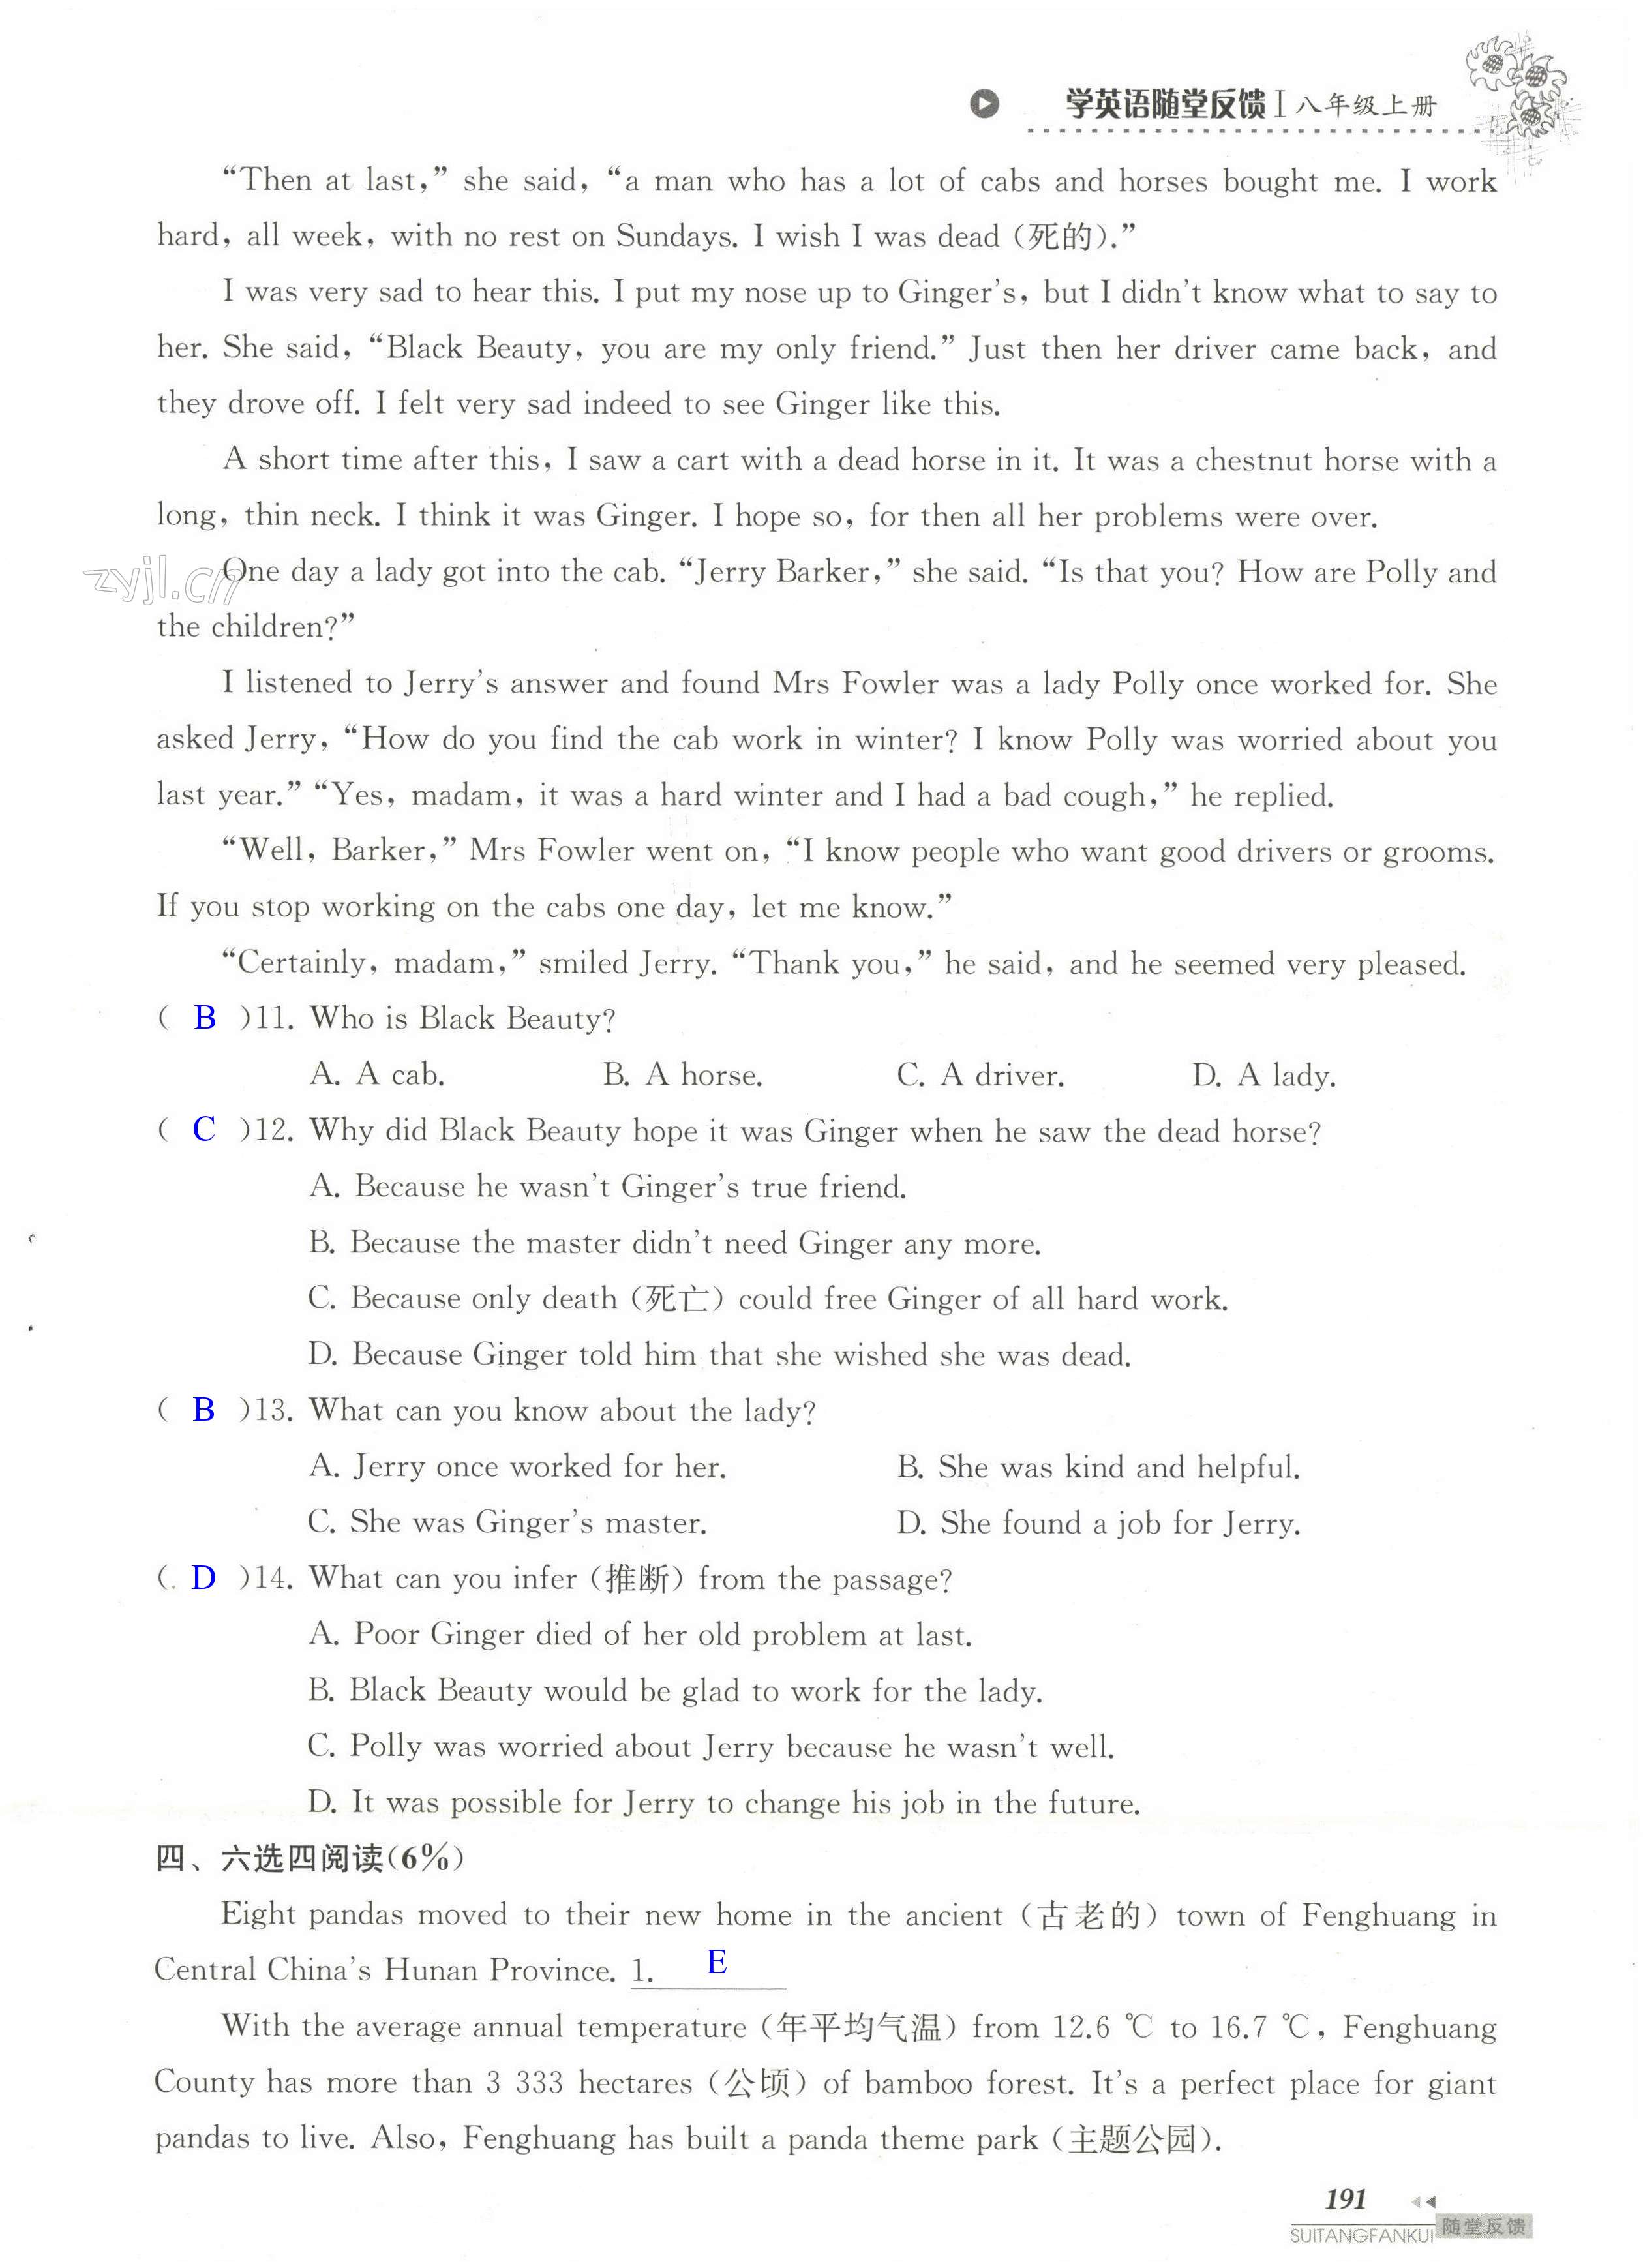 单元综合测试卷 Test for Unit 5 of 8A - 第191页